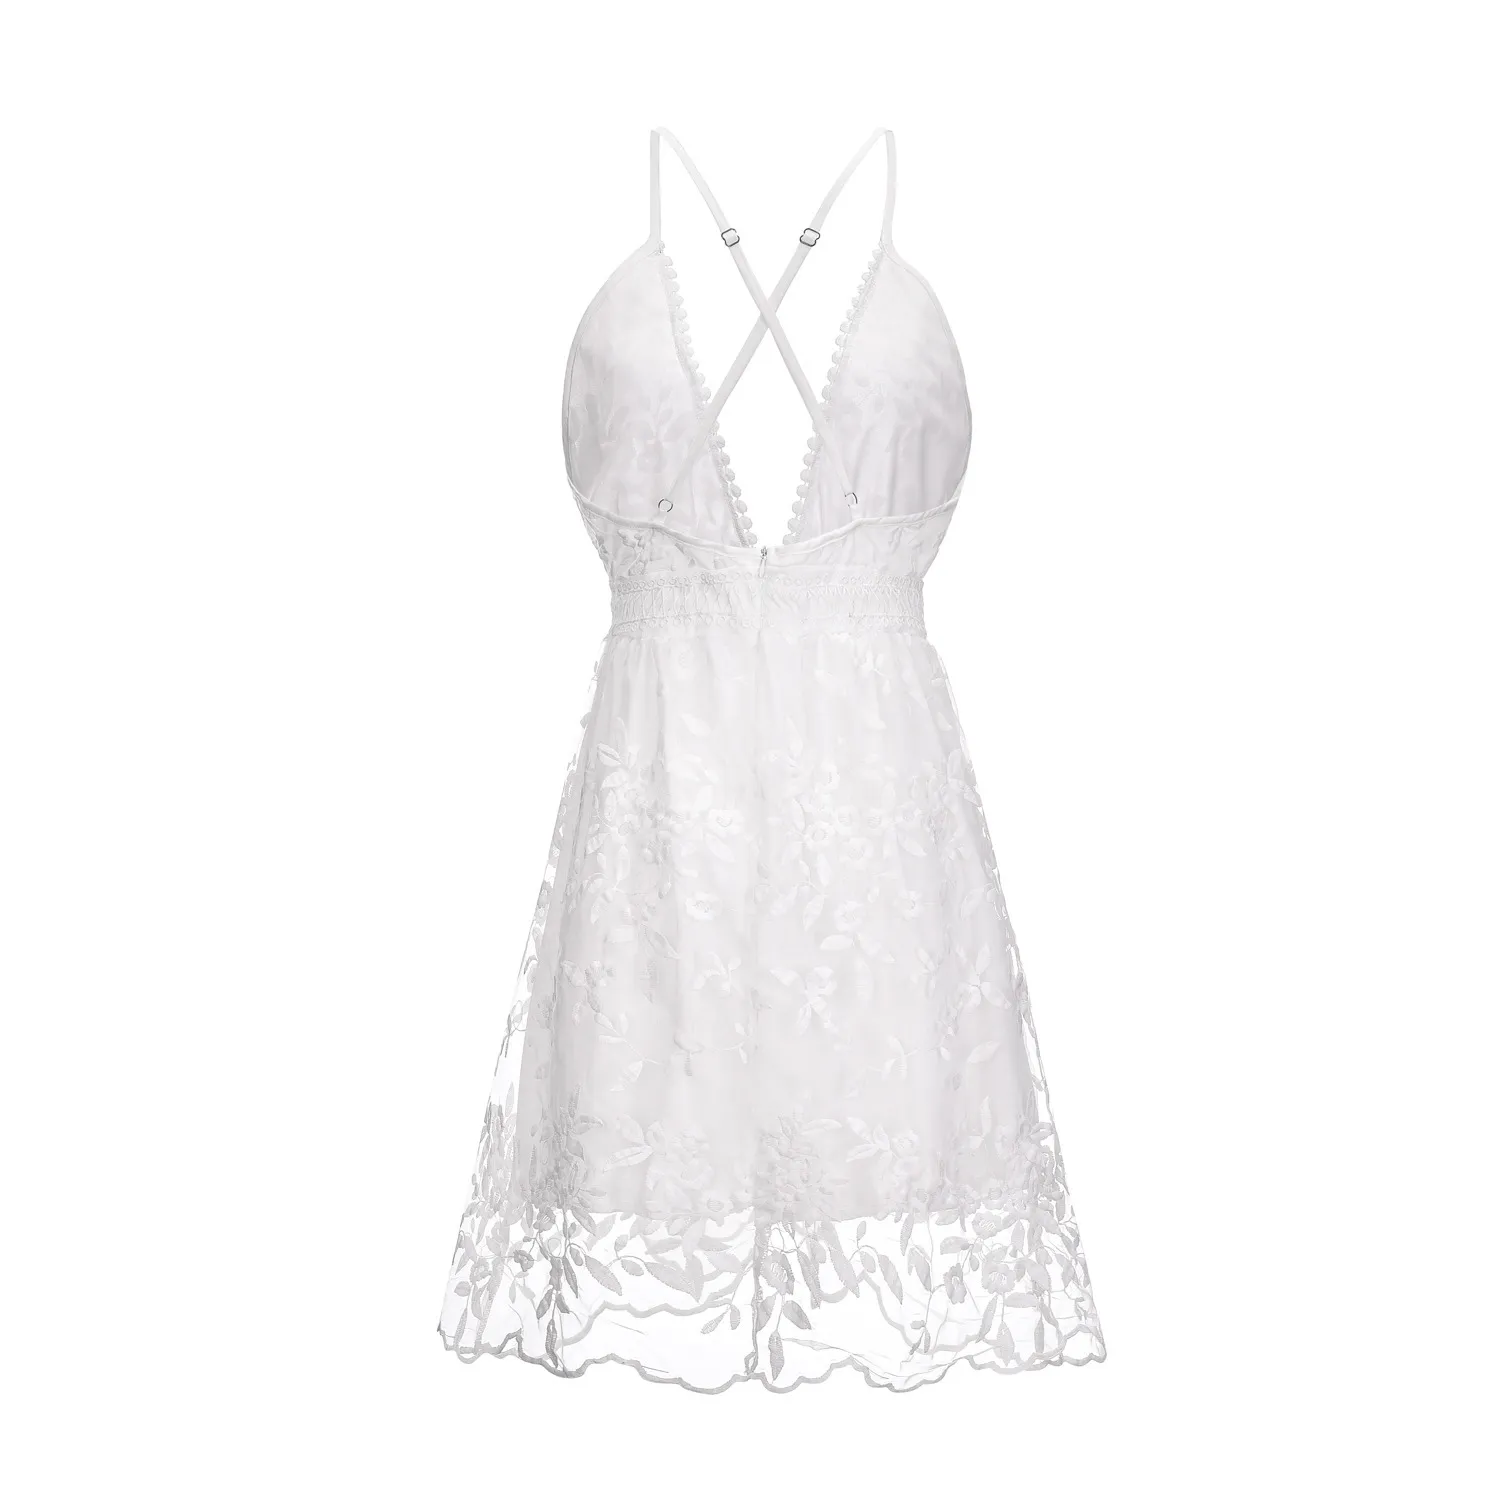 Mode blanc broderie robe florale femmes dos nu Tulle maille court Chic Boho plage Style été Mini Vestido 210427